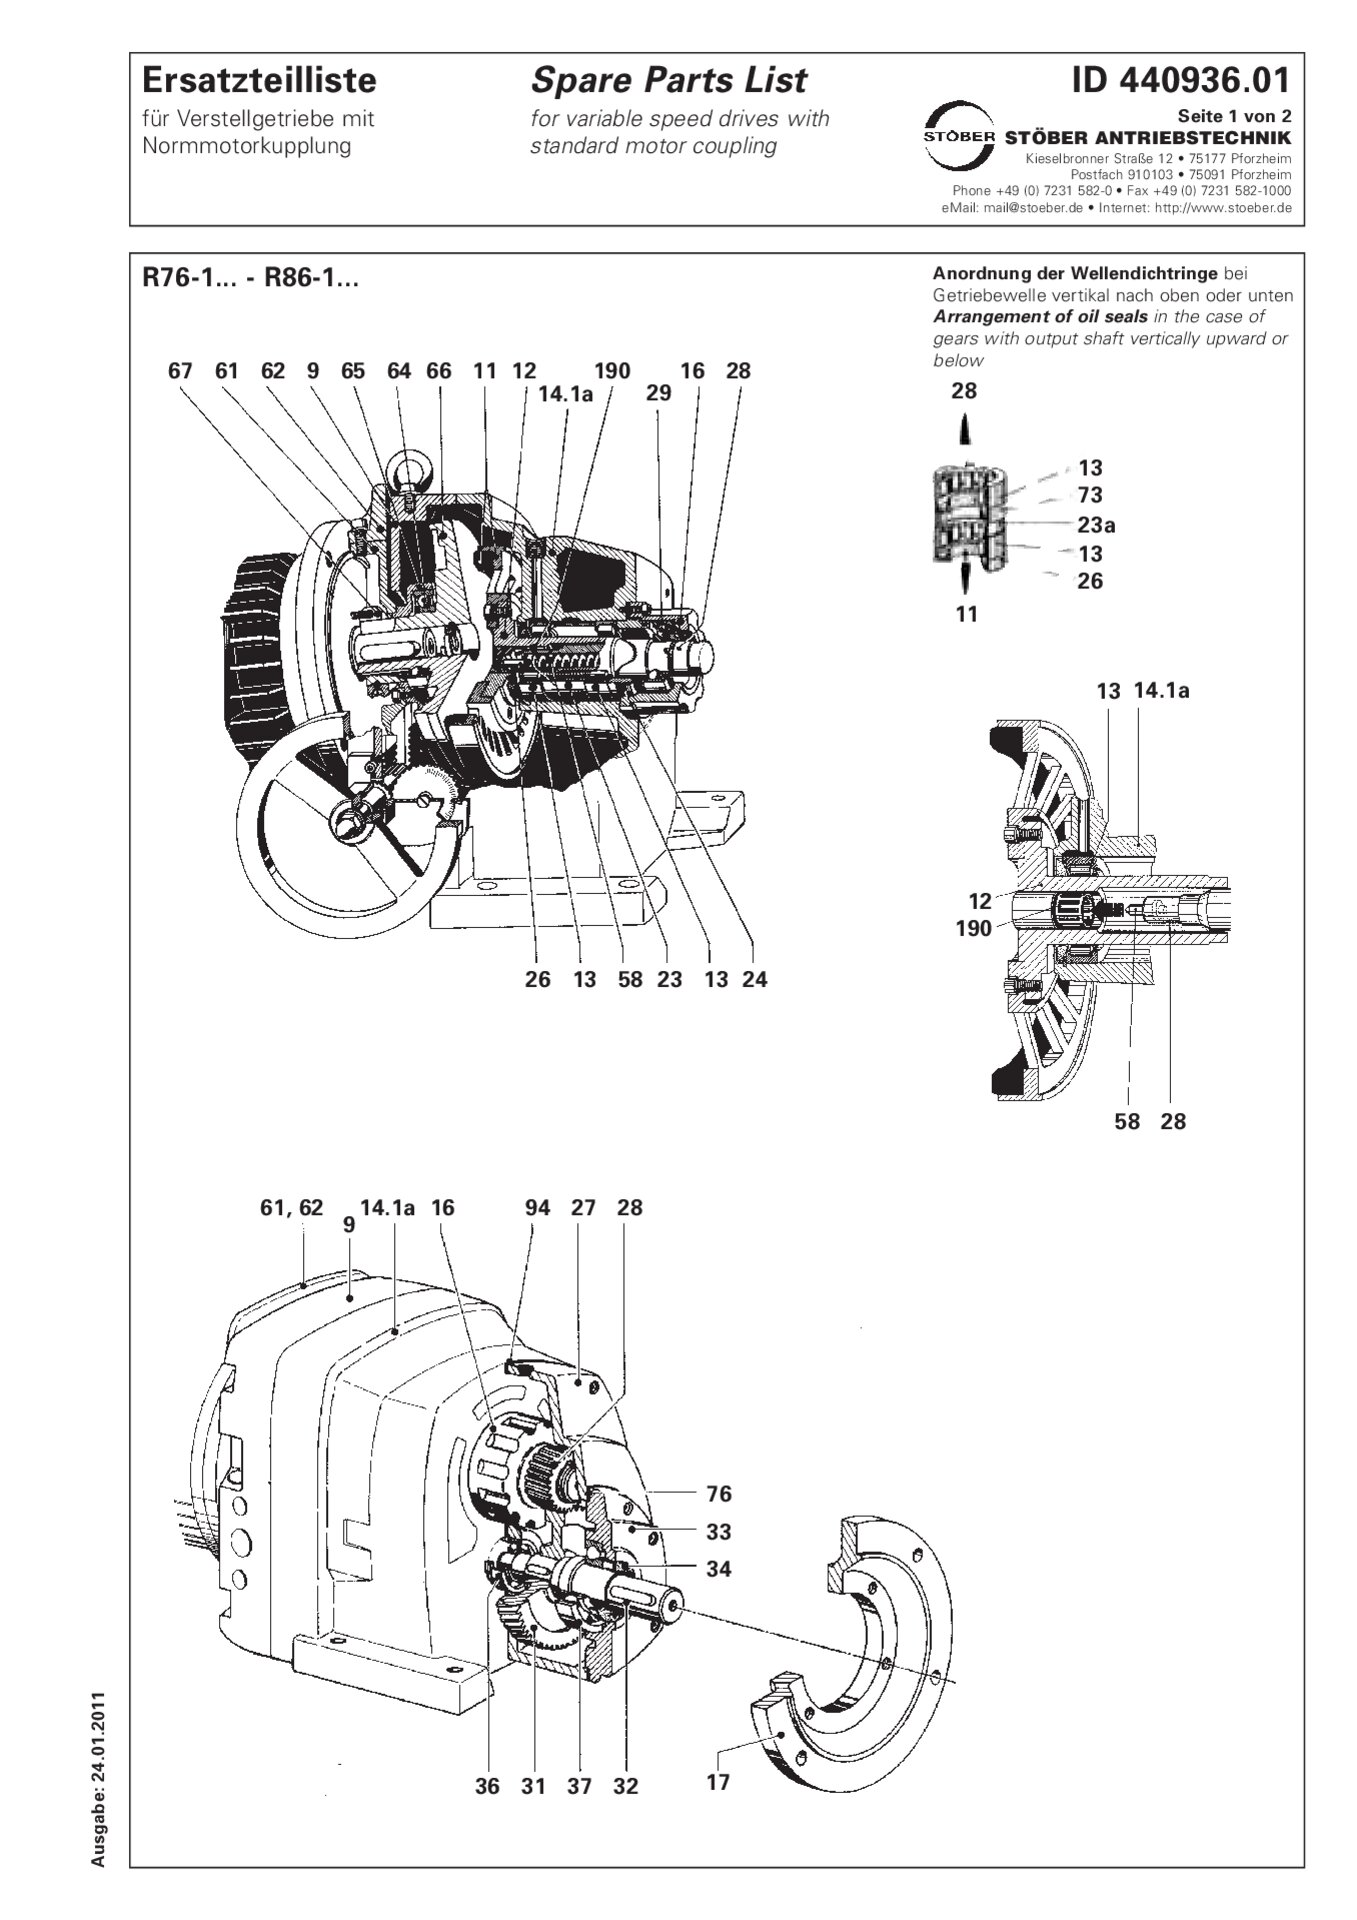 Liste des pièces de rechange R76-1/R86-1 avec accouplement de moteur standardErsatzteilliste R76-1/R86-1 mit NormmotorkupplungListino dei pezzi di ricambio R76-1/R86-1 con accoppiamento motore standardSpare parts list R76-1/R86-1 with standard motor coupling